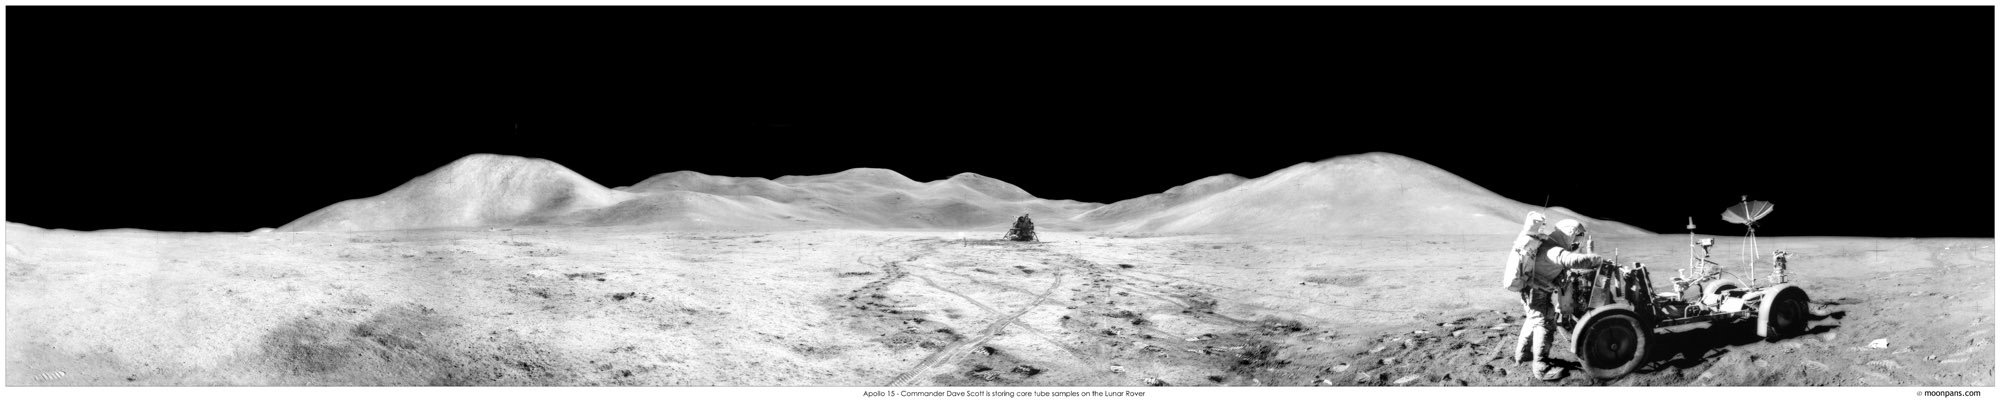 Apollo 15 panorama photo